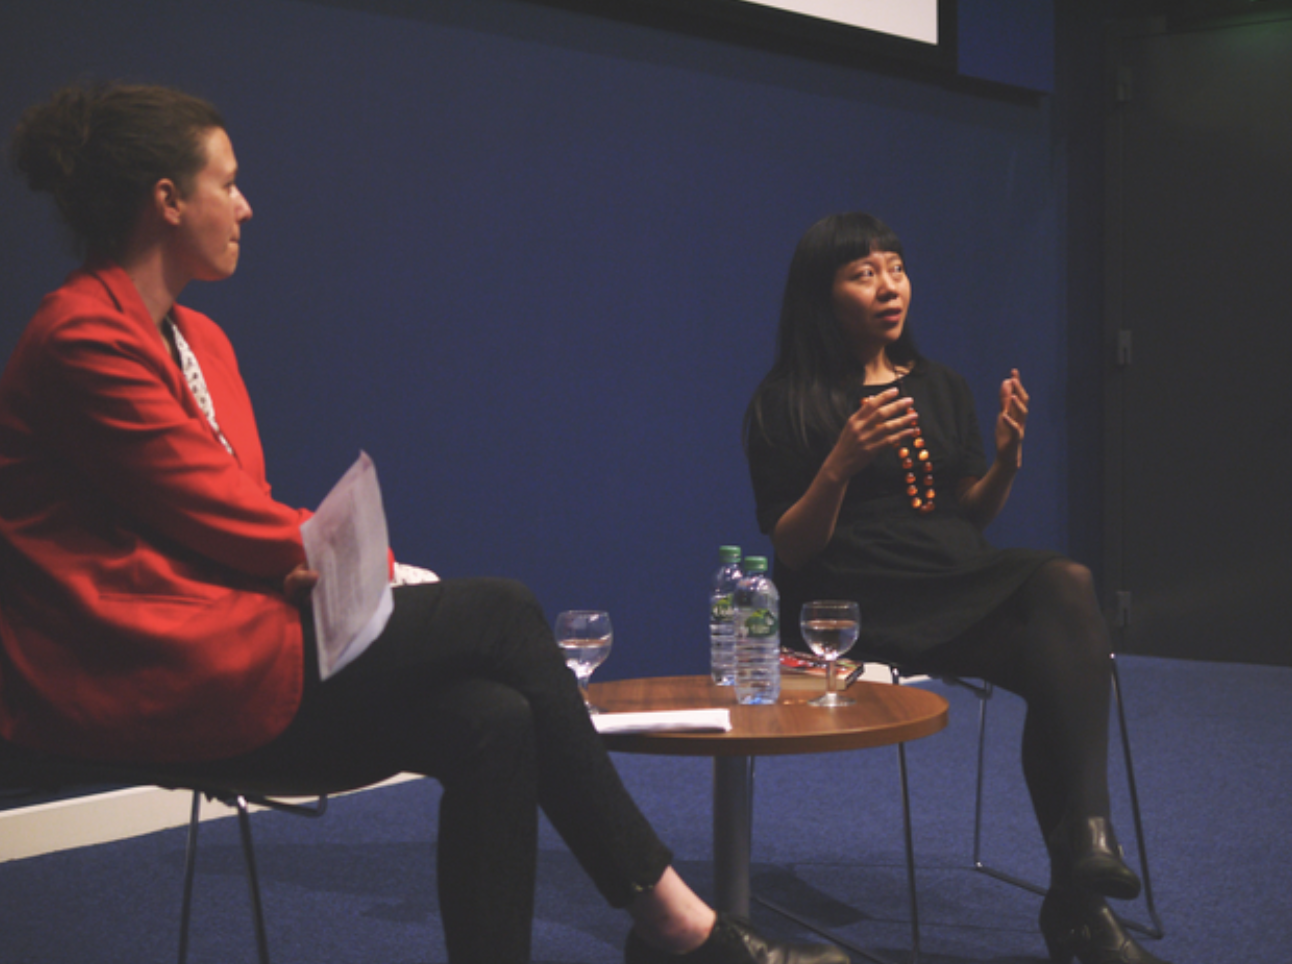 An evening with award-winning Chinese-British filmmaker and novelist Xiaolu Guo